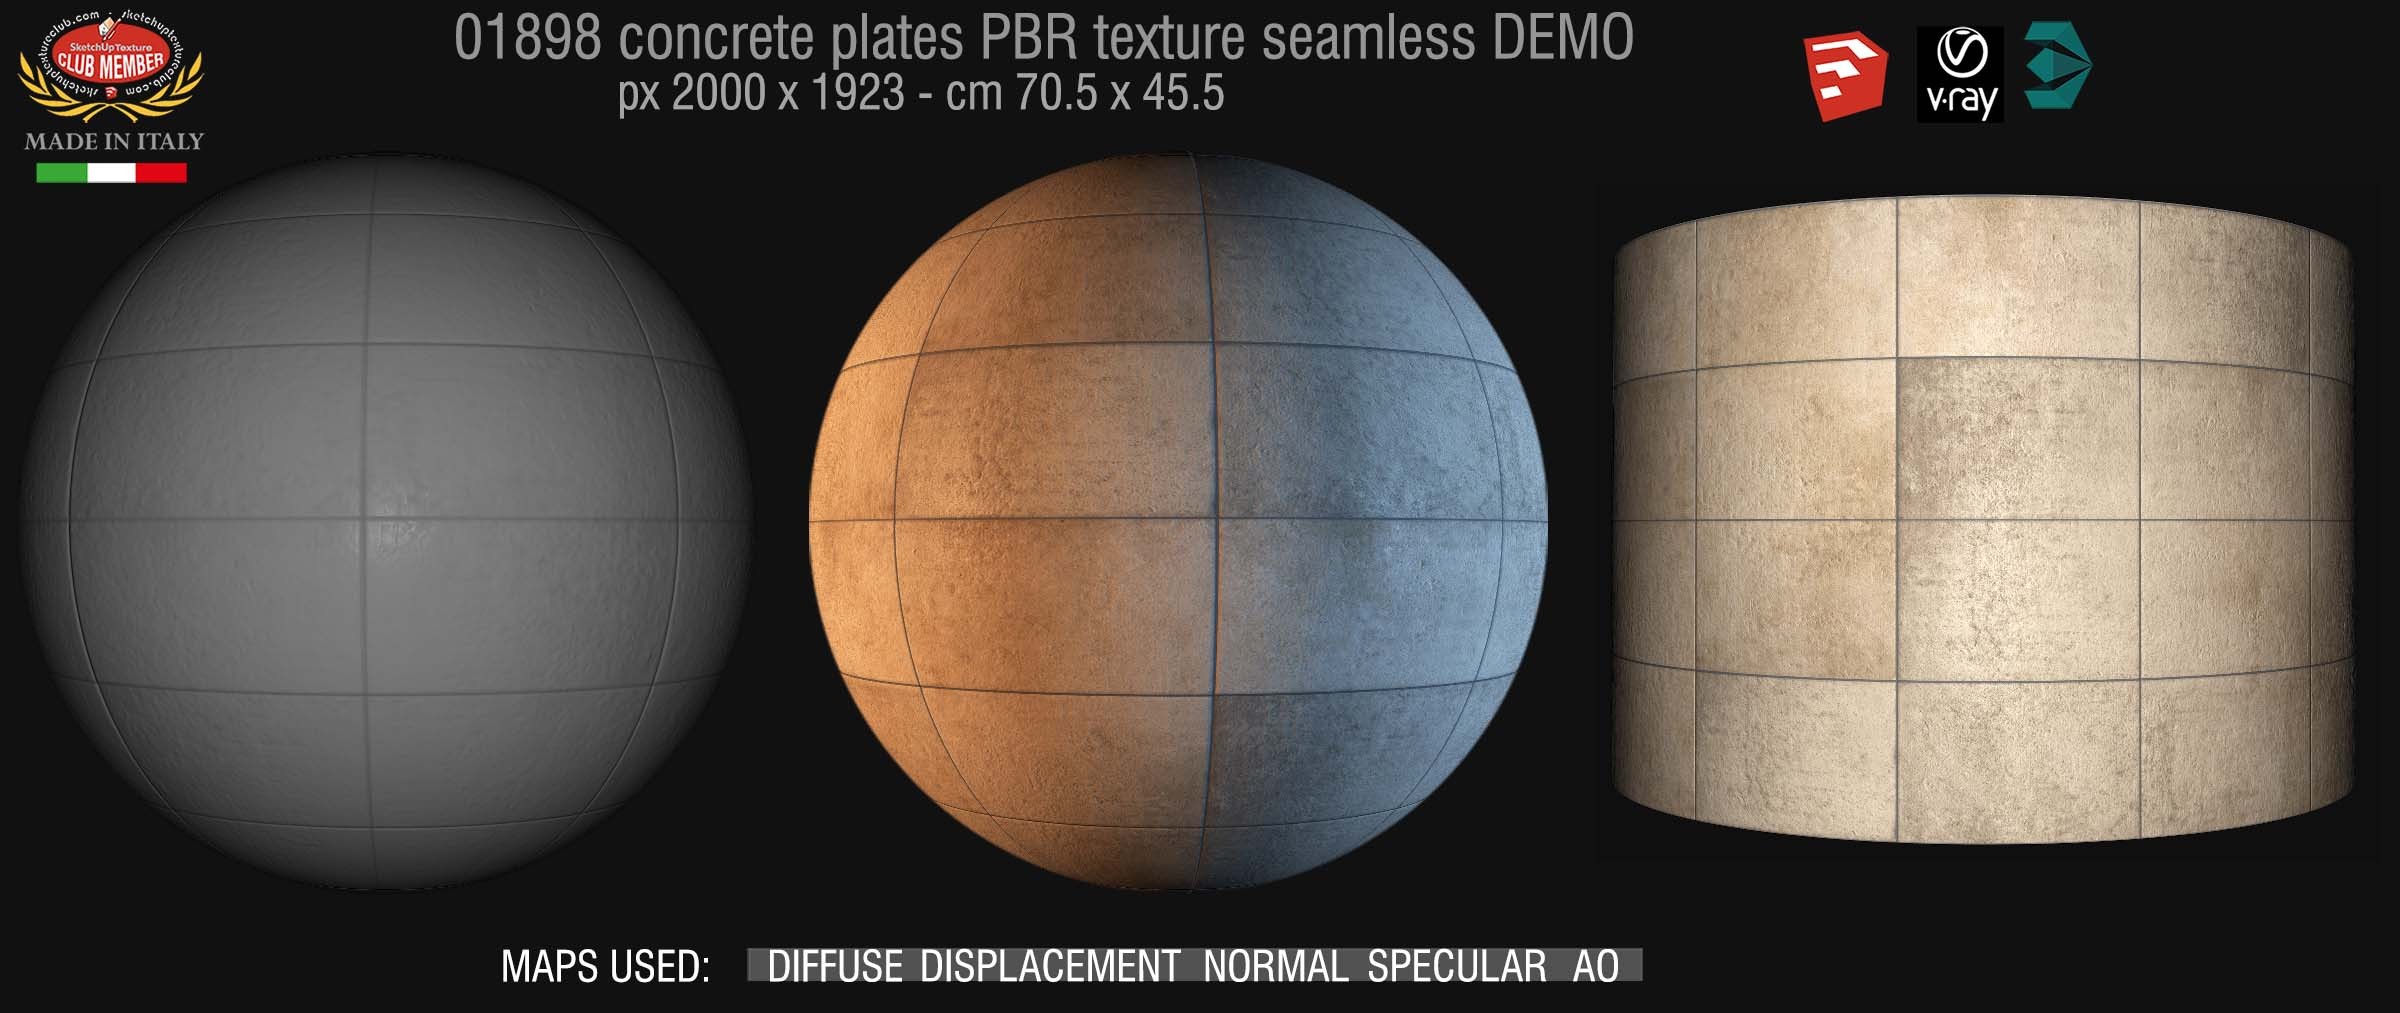 01898 85_tadao ando concrete plates PBR texture seamless DEMO